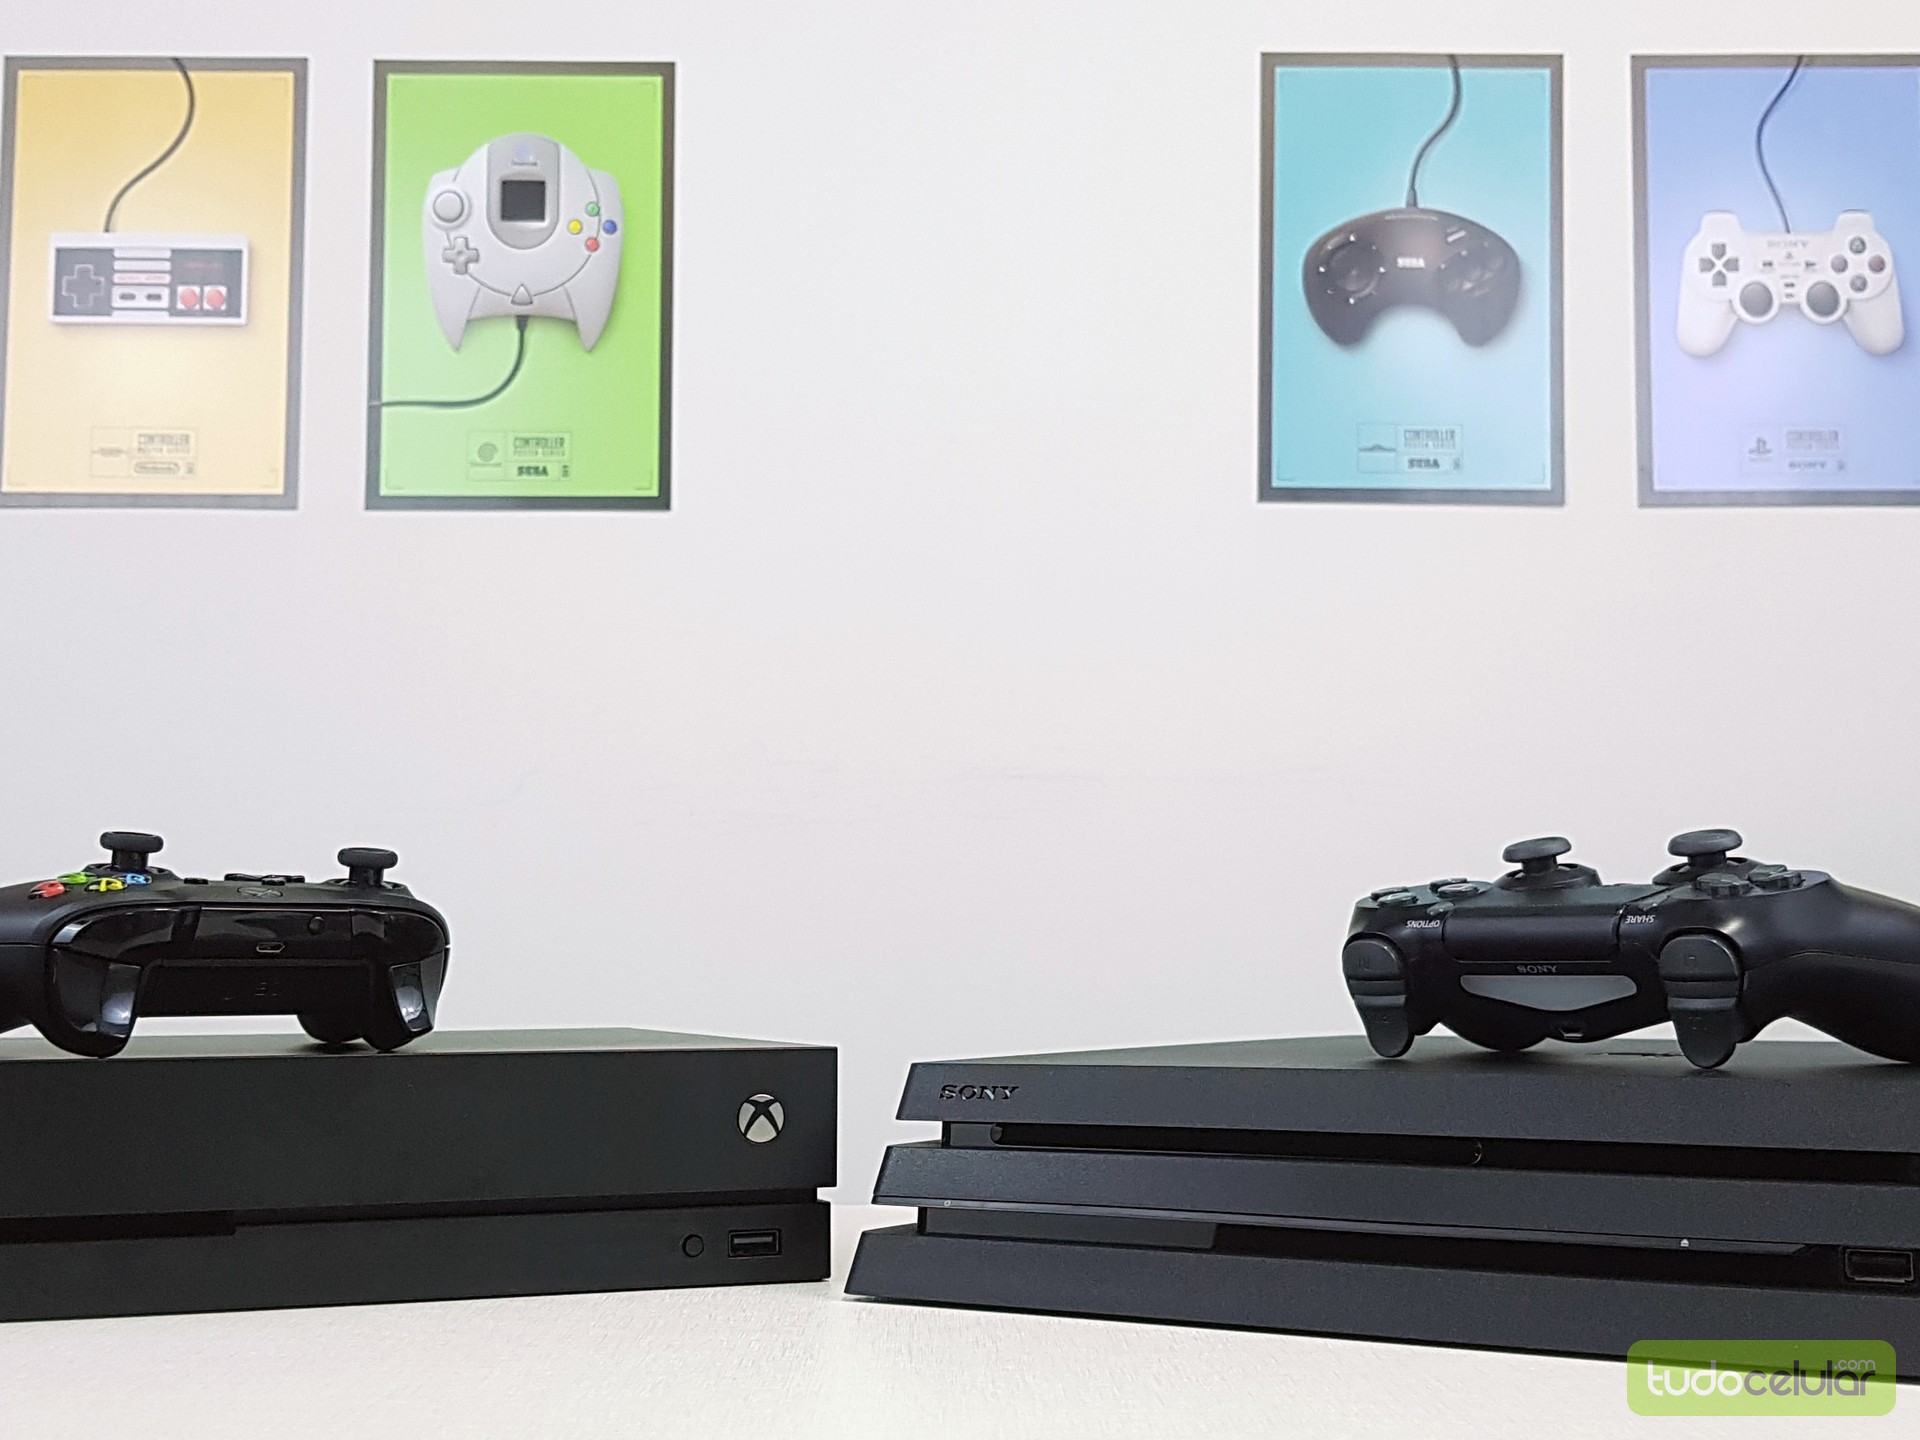 Jogos grátis de Xbox dispensam assinatura Live Gold no multiplayer - Olhar  Digital